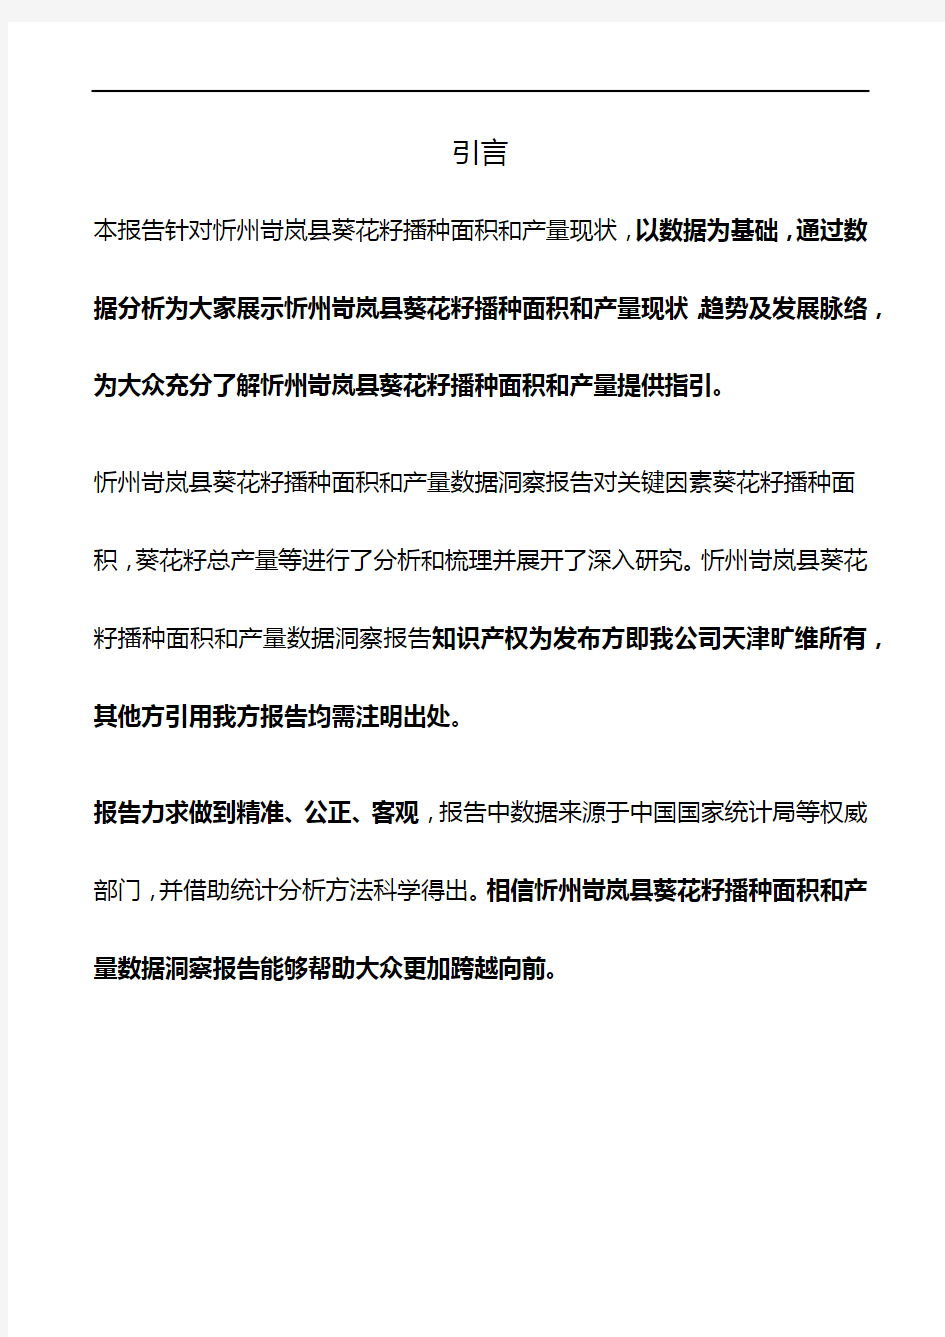 山西省忻州岢岚县葵花籽播种面积和产量3年数据洞察报告2020版